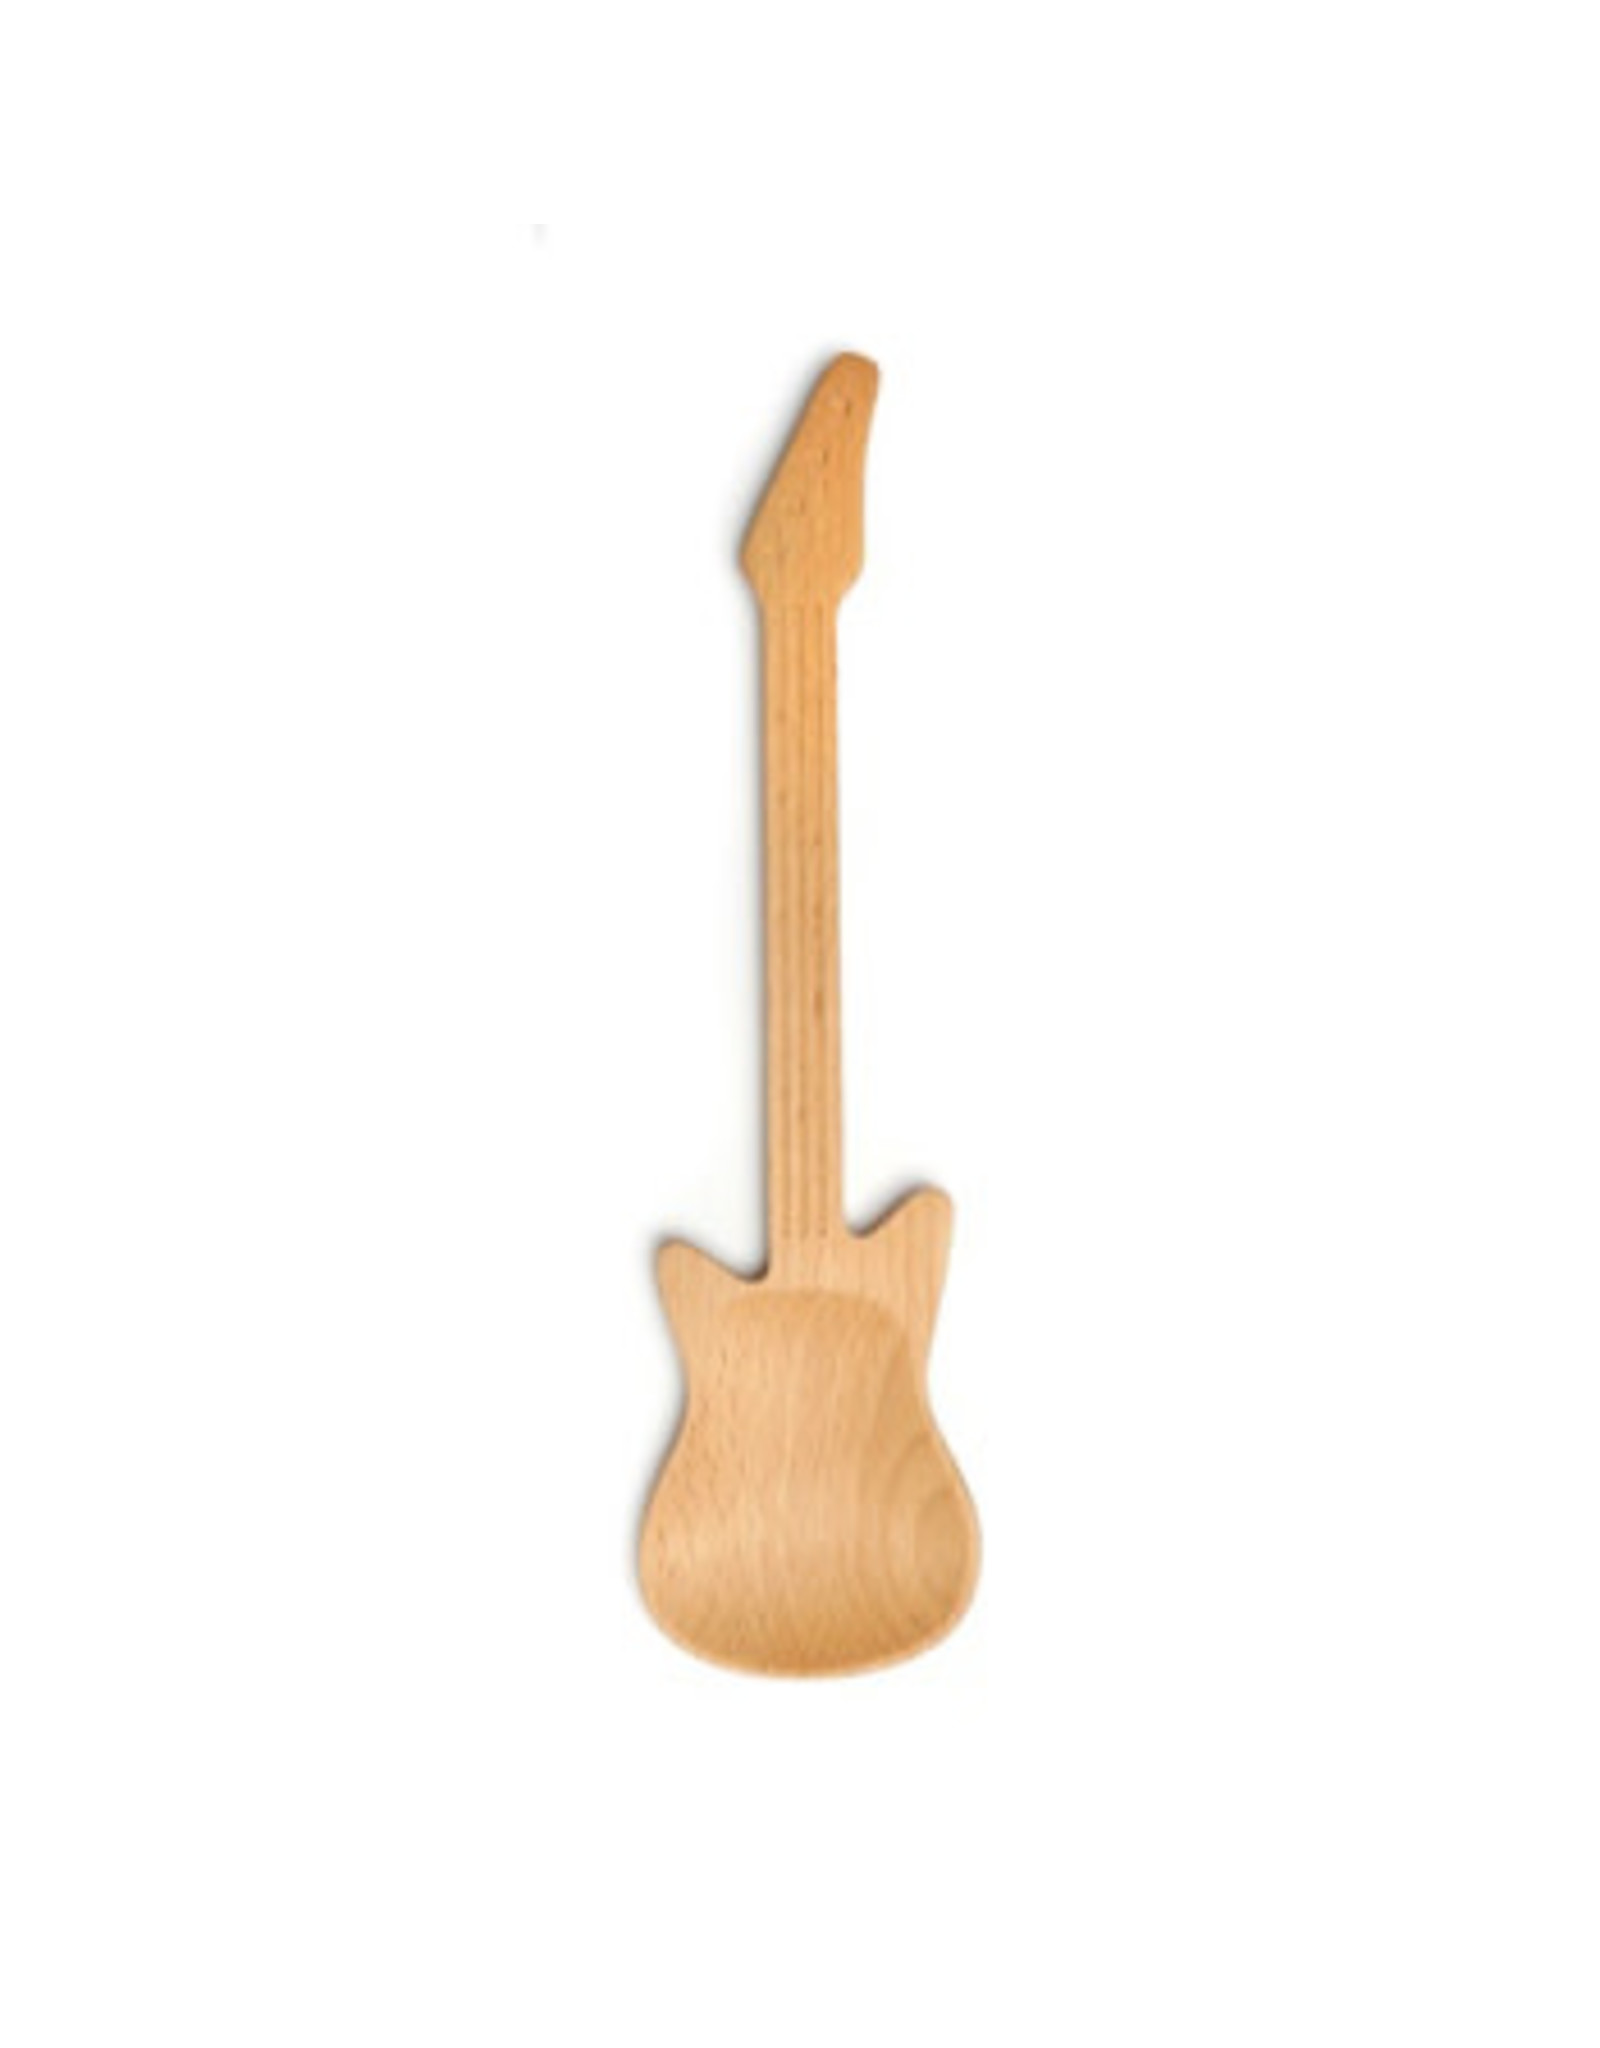 Kikkerland houten pollepel in de  vorm van een gitar